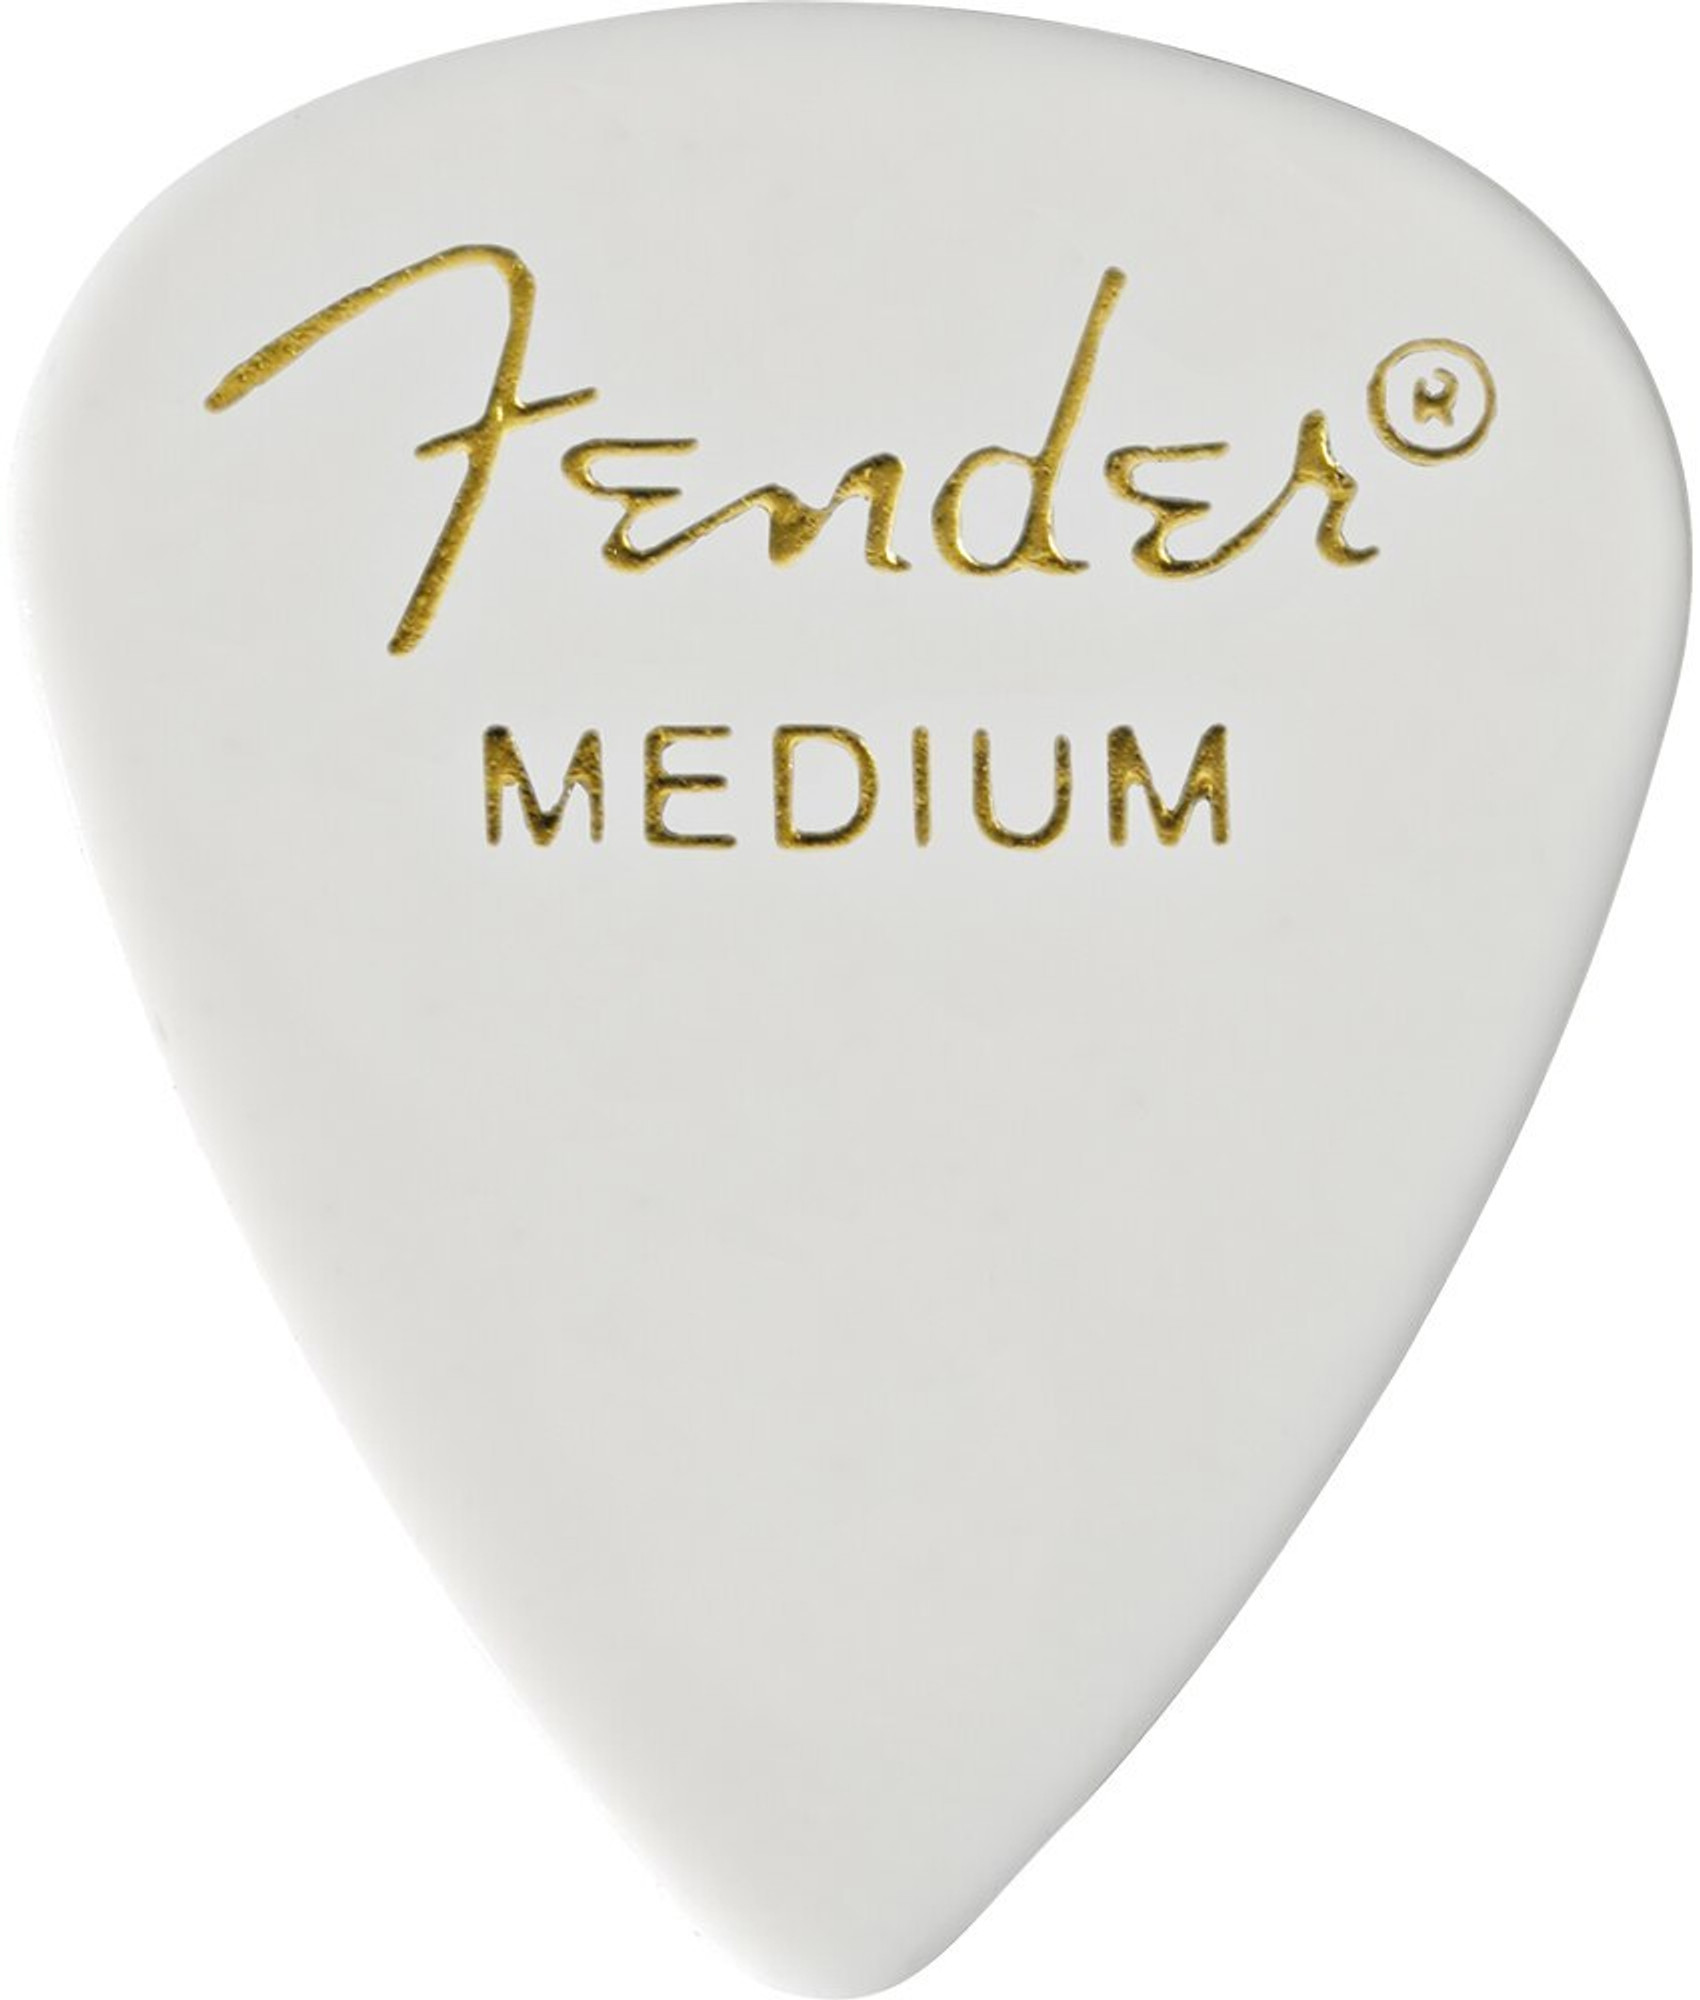 Fender 351 White Medium Celluloid Guitar Picks, 12 pack - Alamo Music